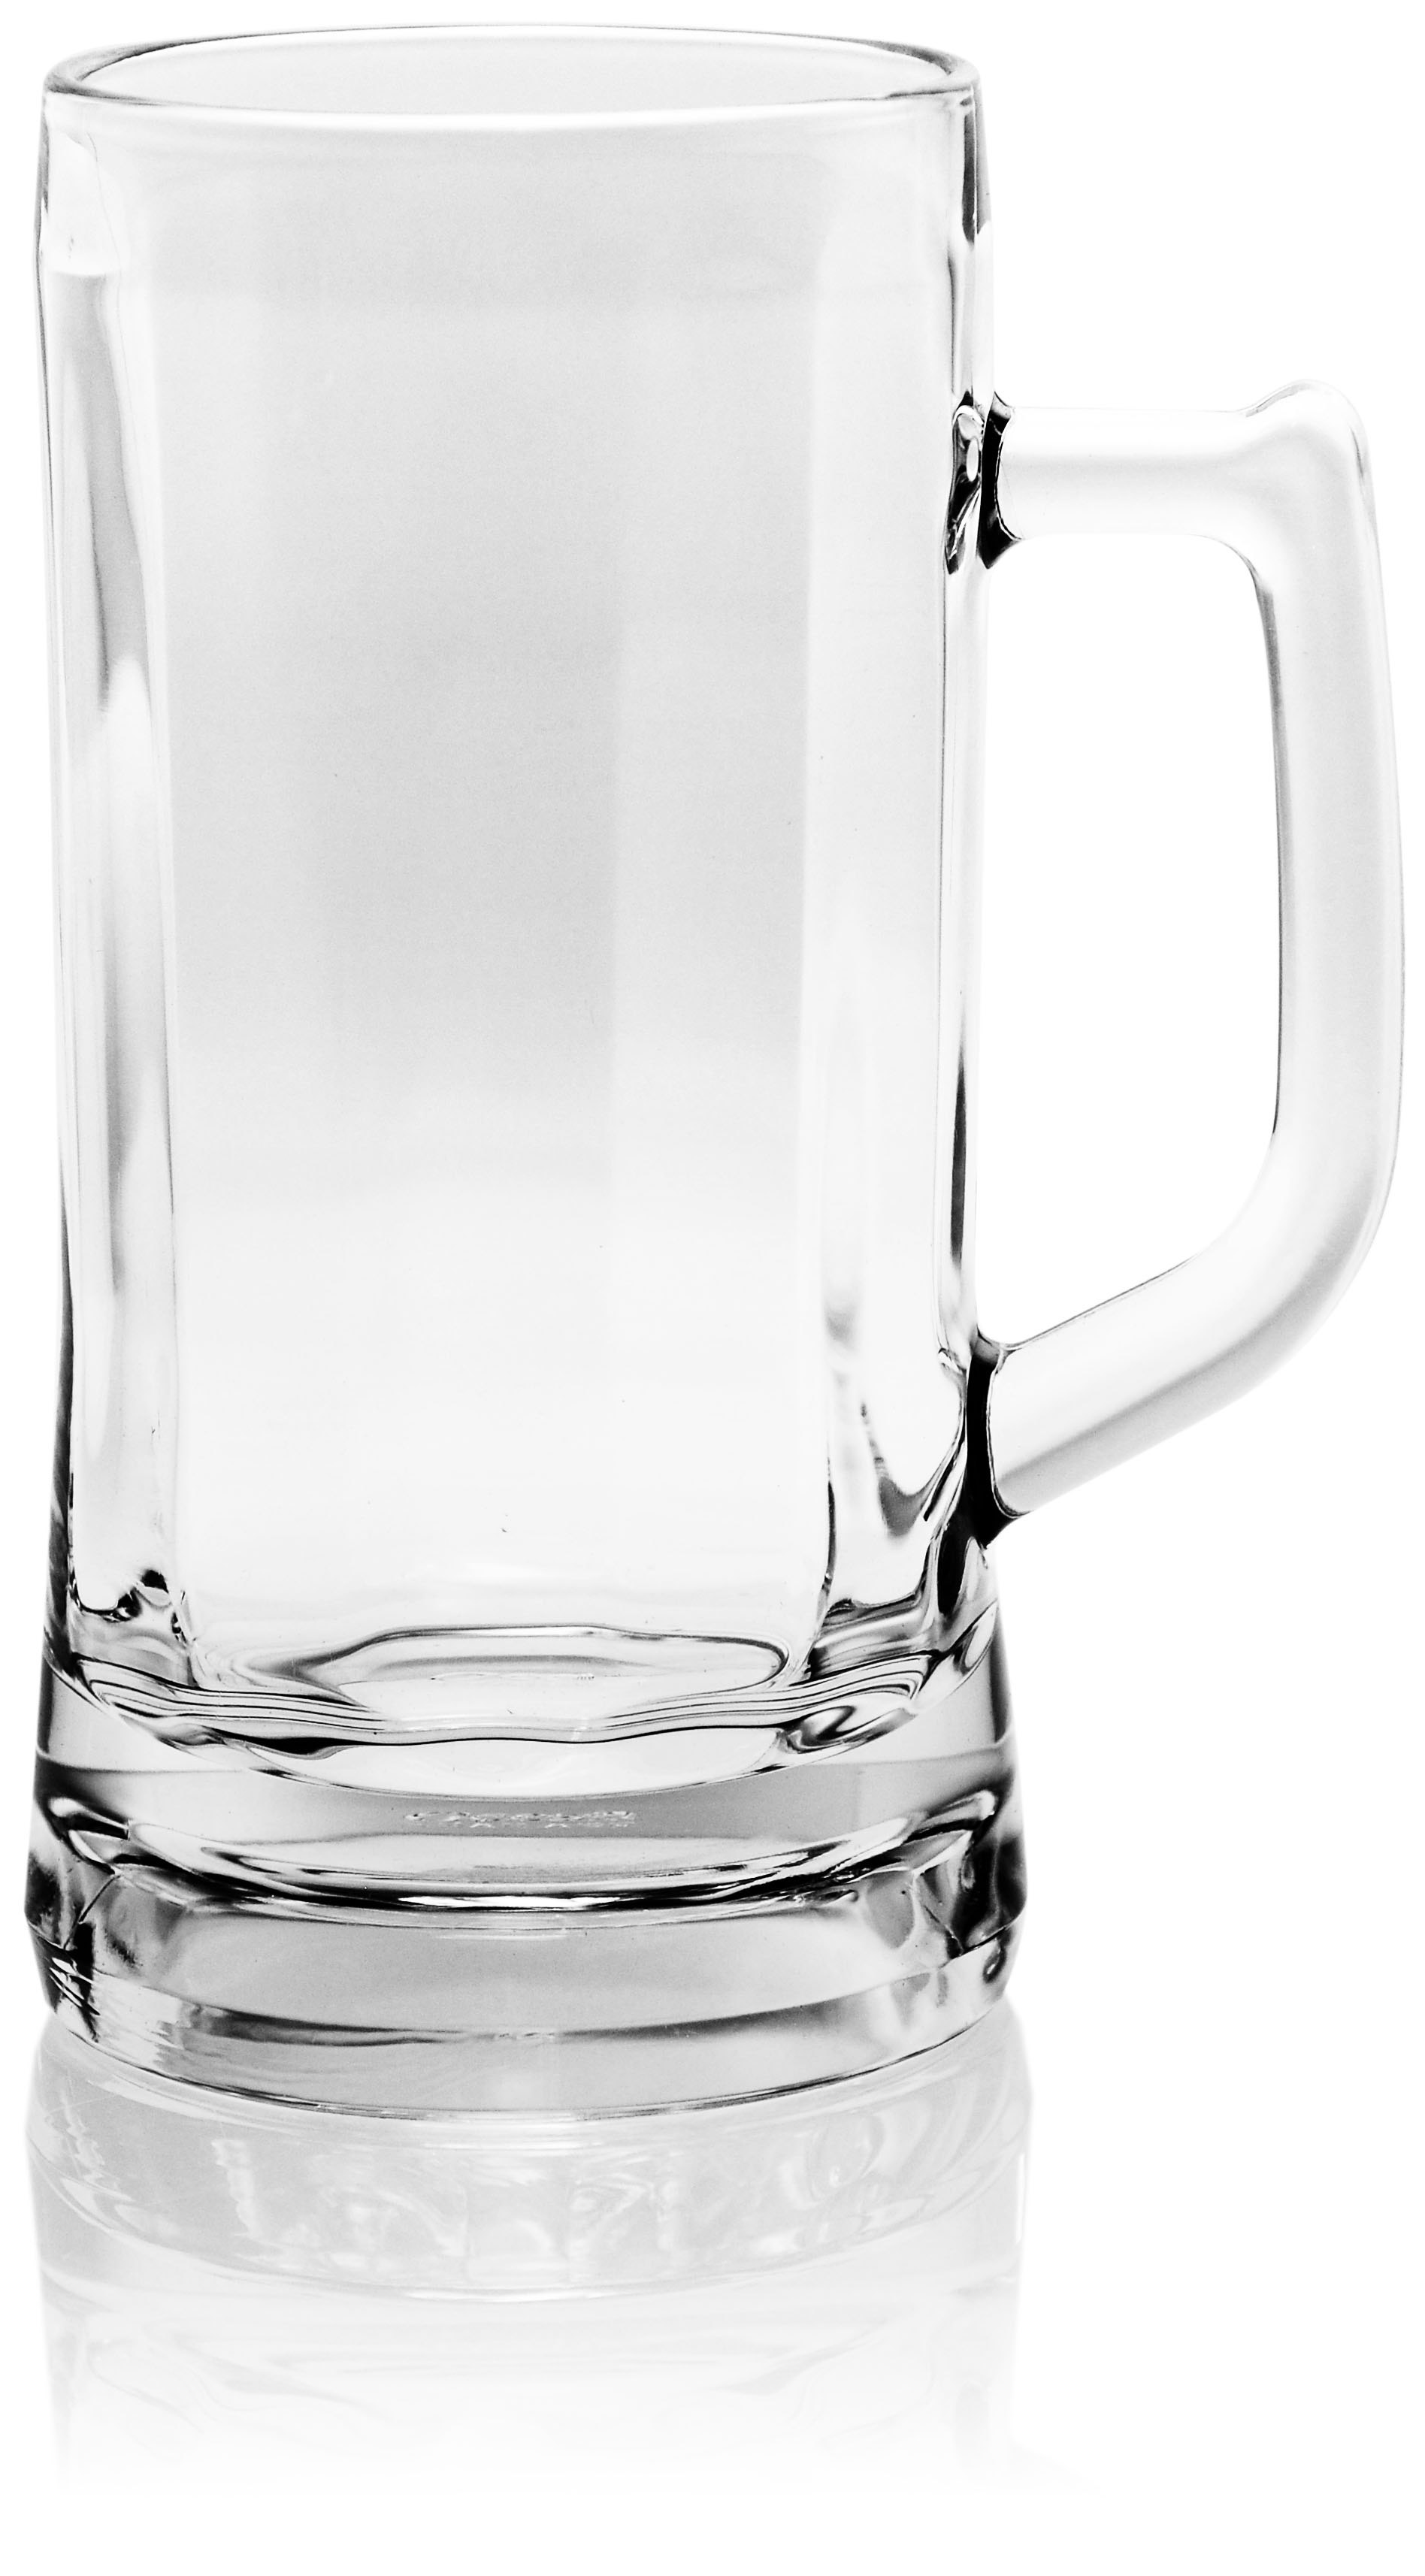 P00843 Munich Beer